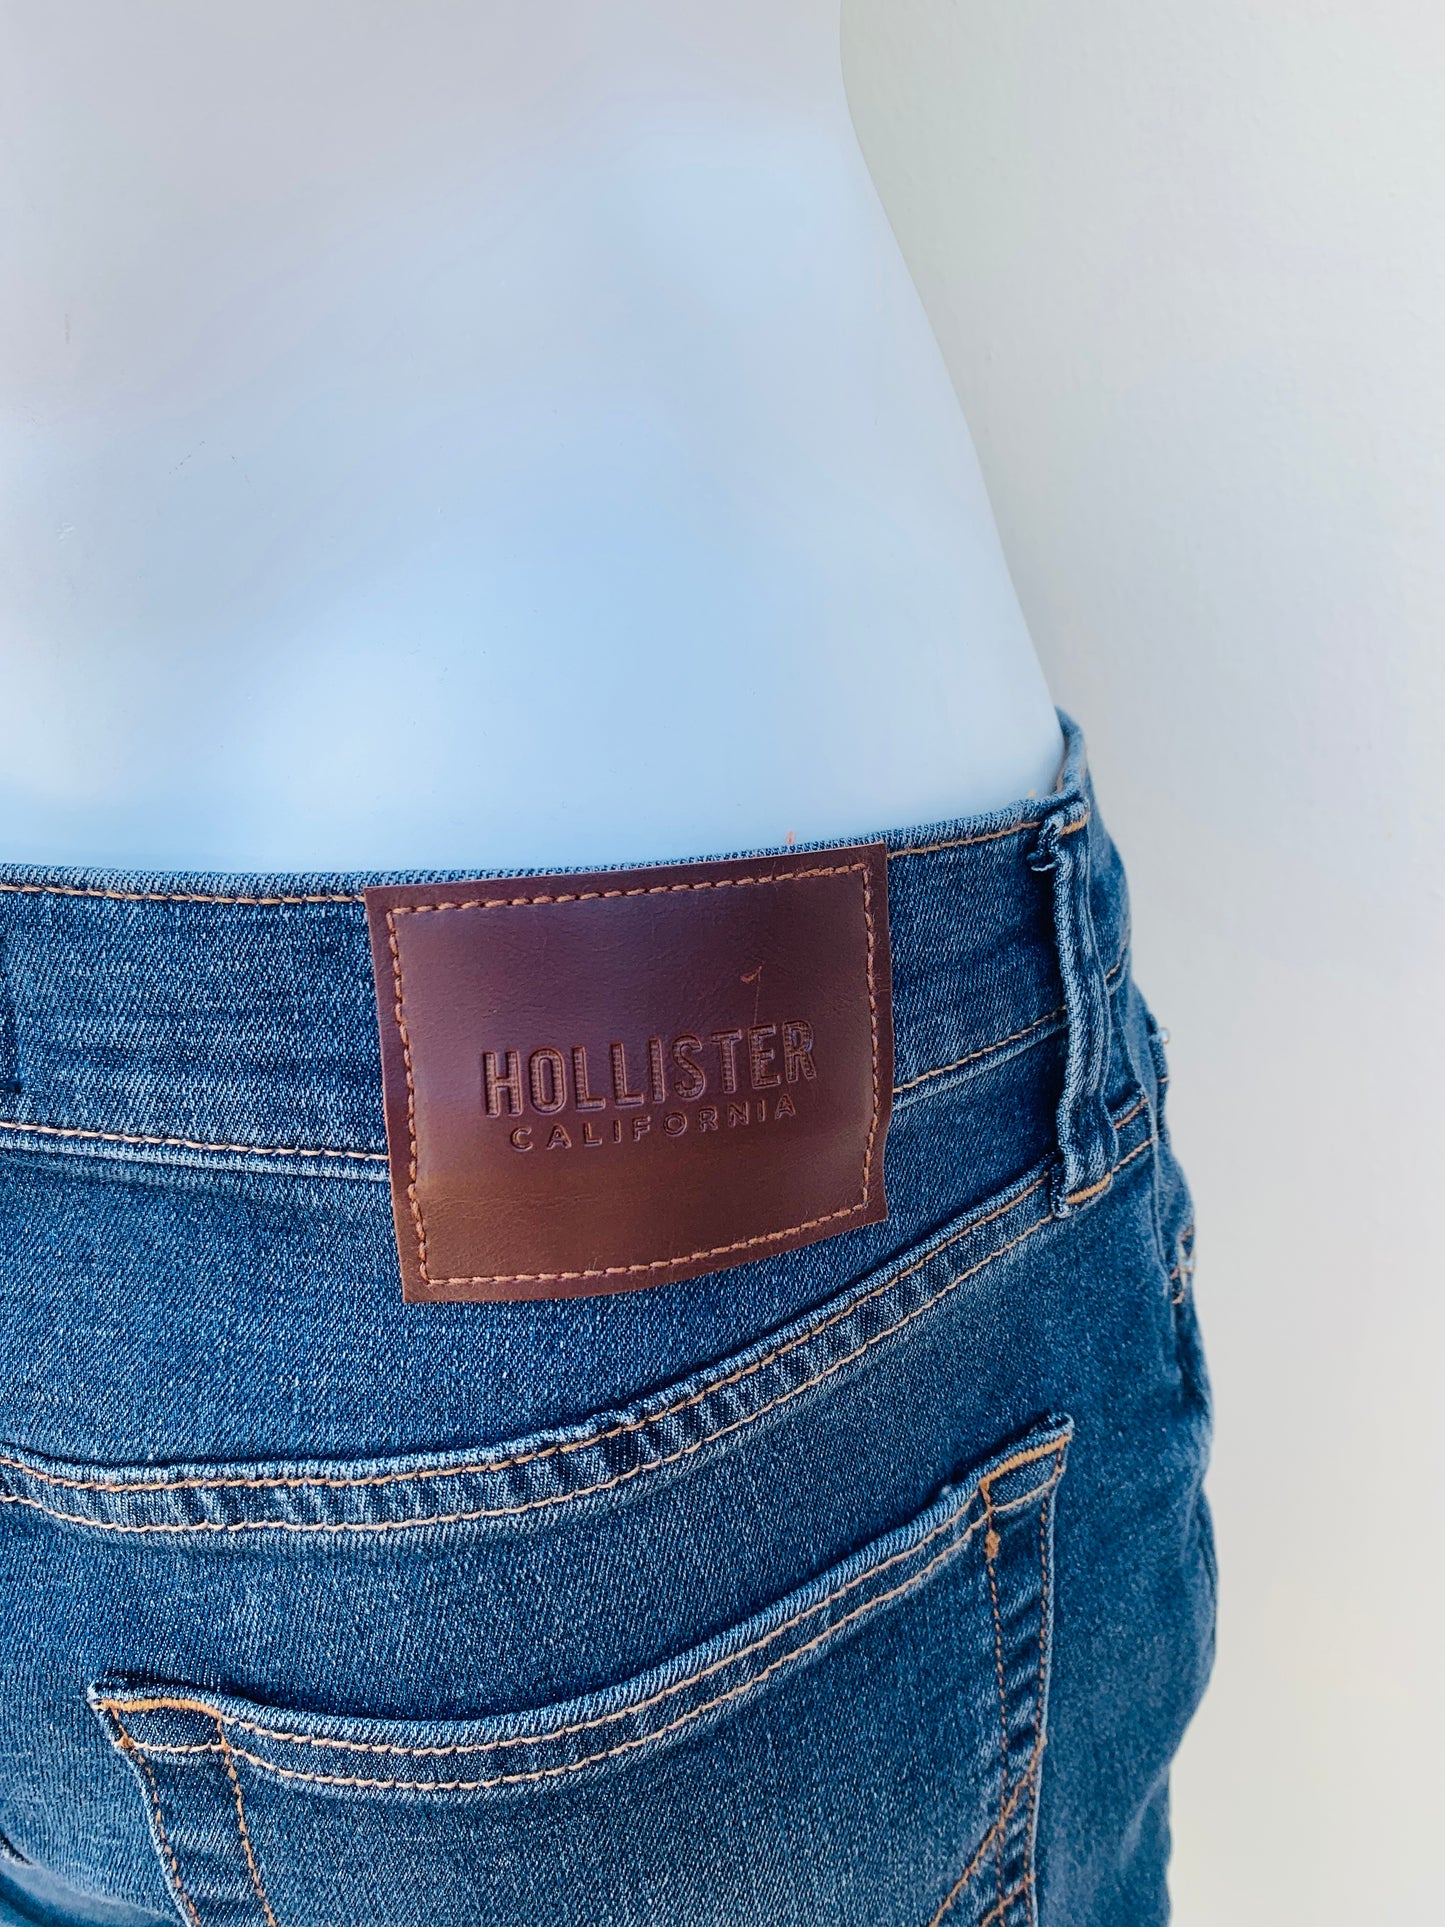 Pantalón Jeans Hollister original azul marino oscuro liso, STACKED SKINNY ( más oscuro )